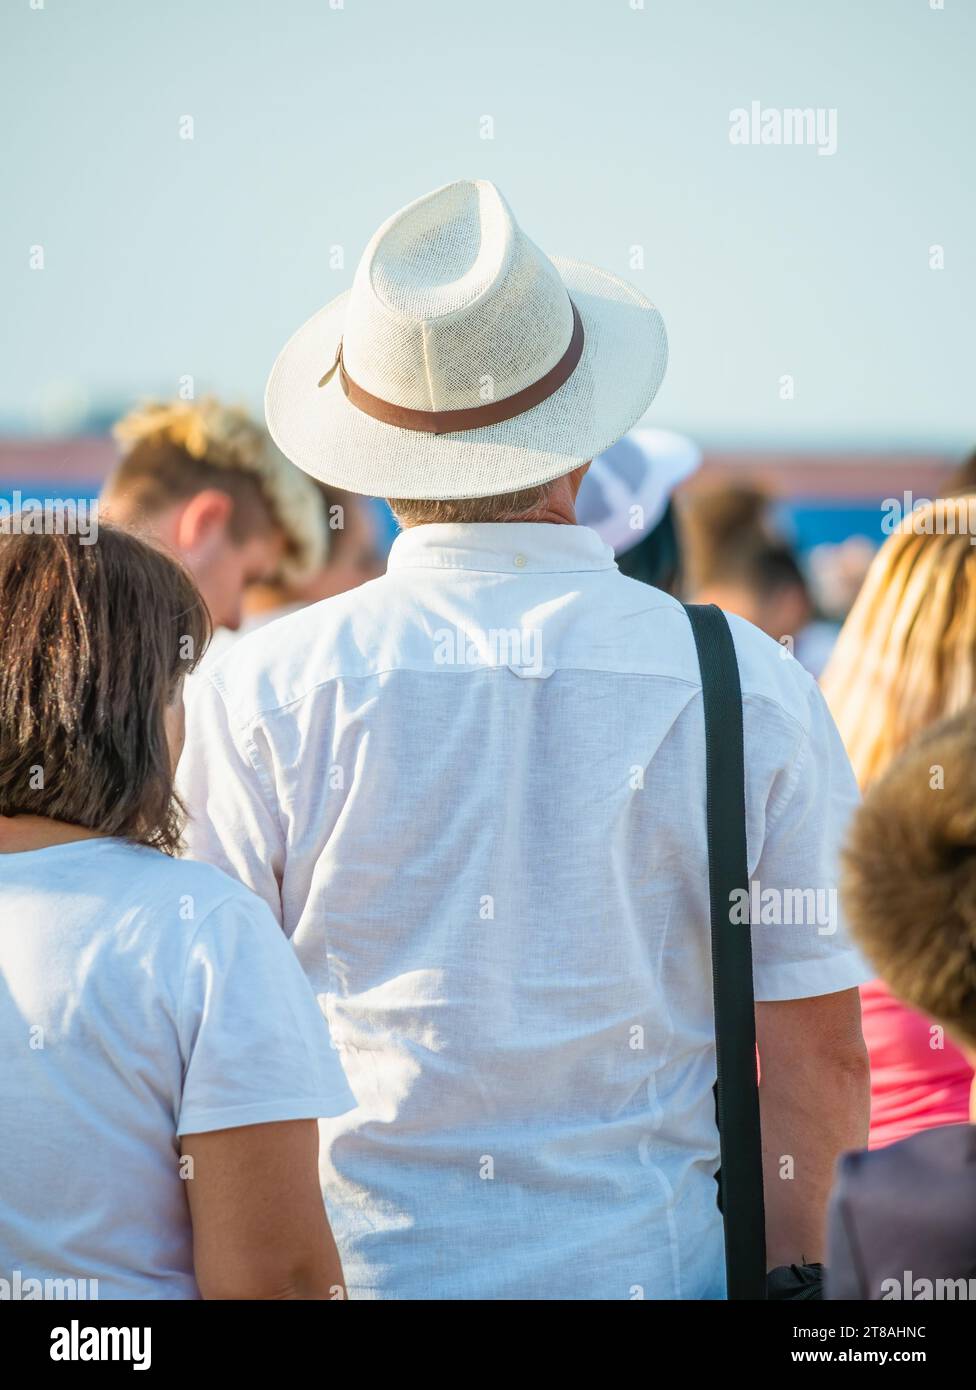 Photo de vue arrière d'un homme portant un élégant chapeau entouré par une foule de gens. Banque D'Images